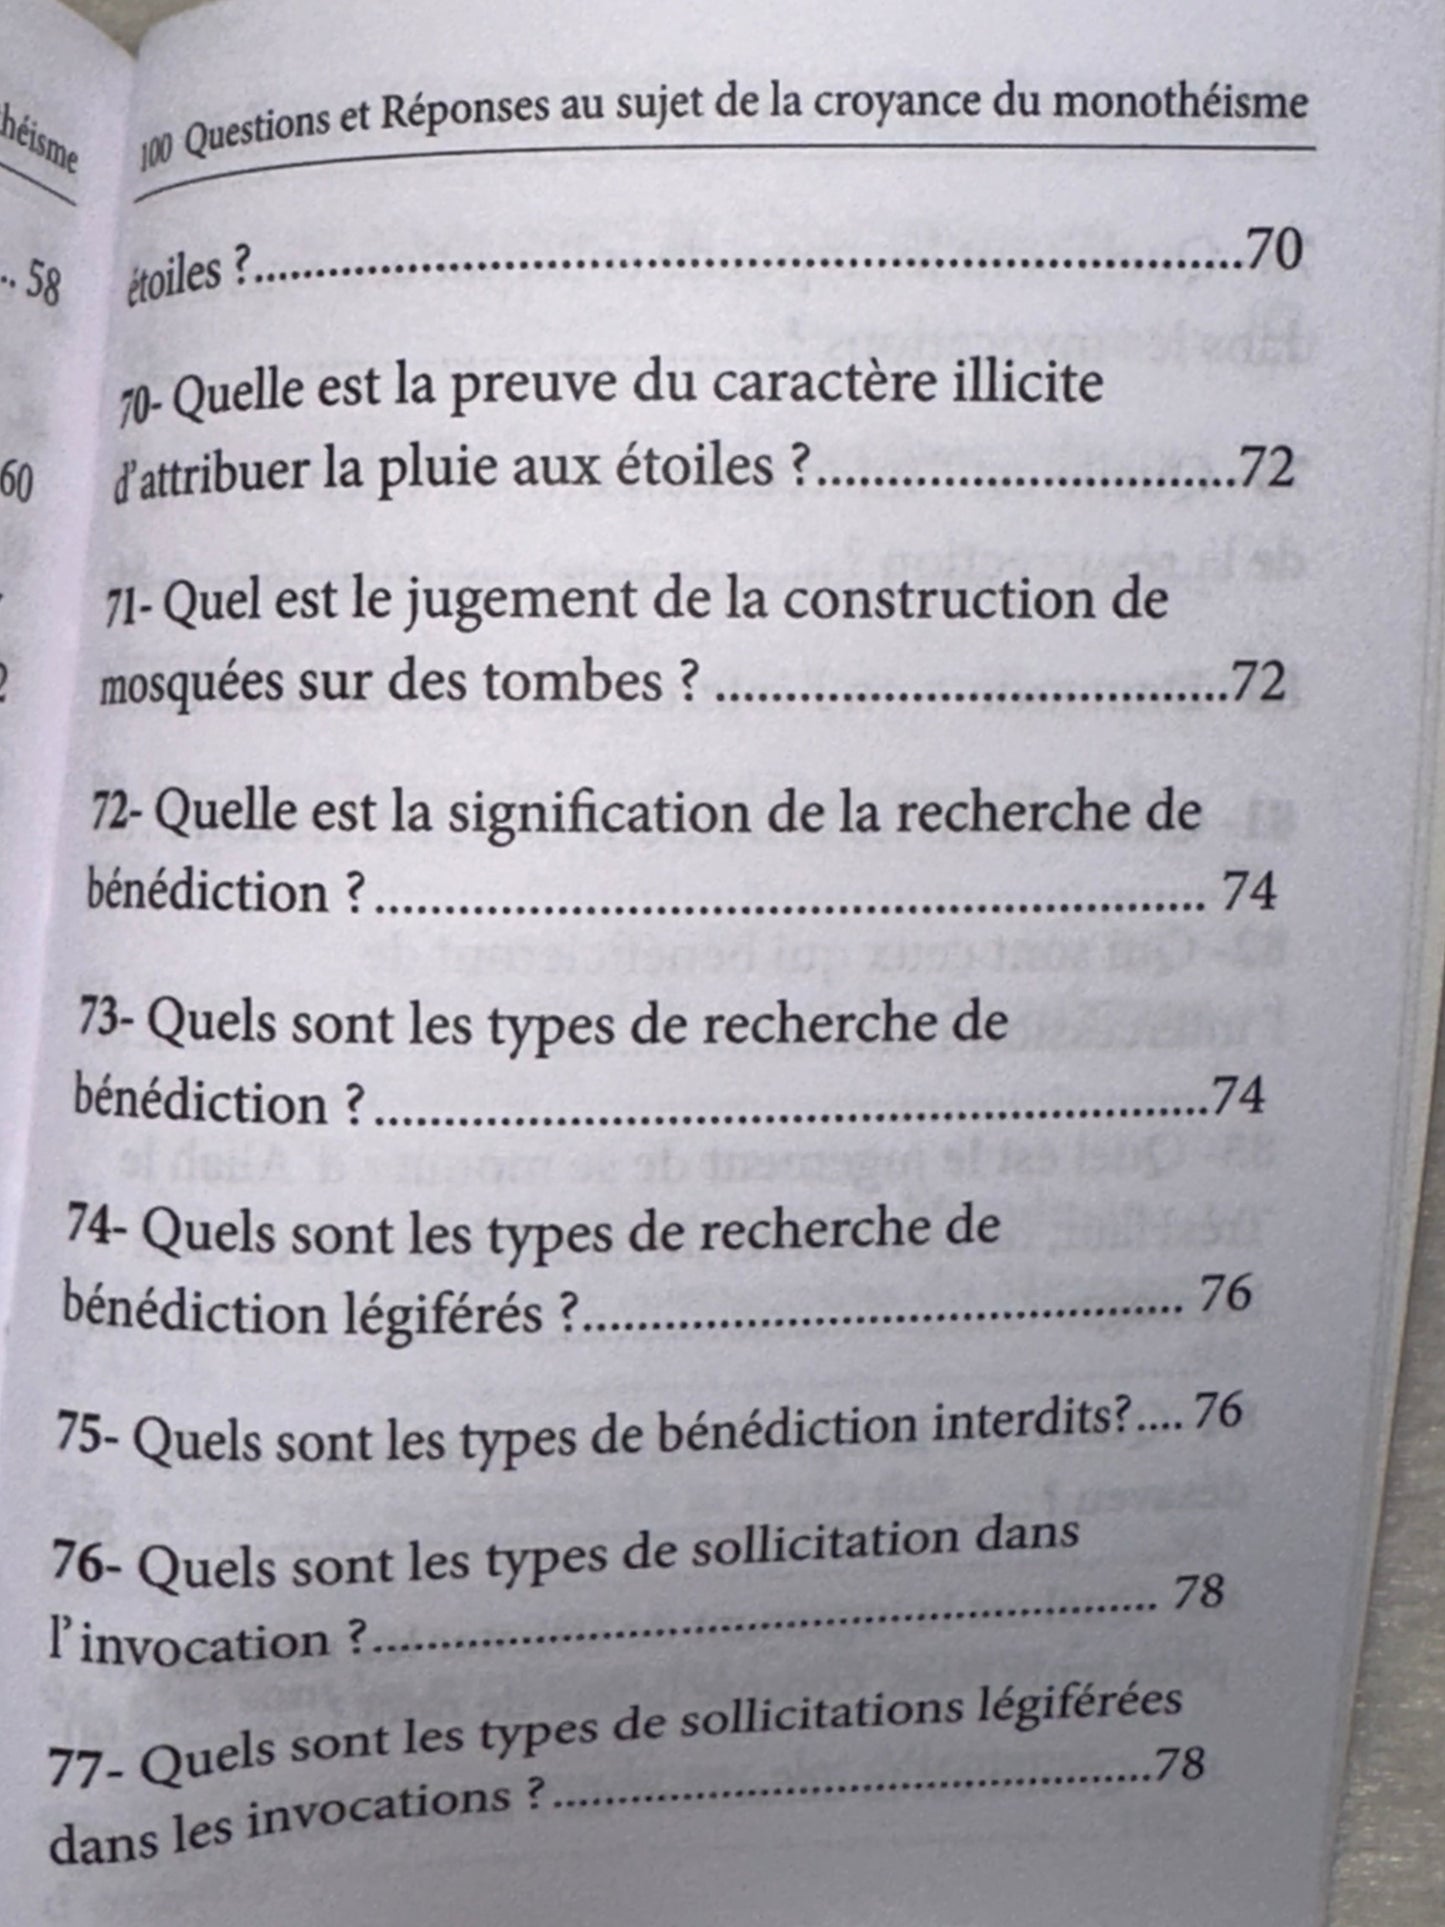 100 Questions Et Réponses AU SUJET DE LA CROYANCE DU MONOTHÉISME (Français-Arabe)